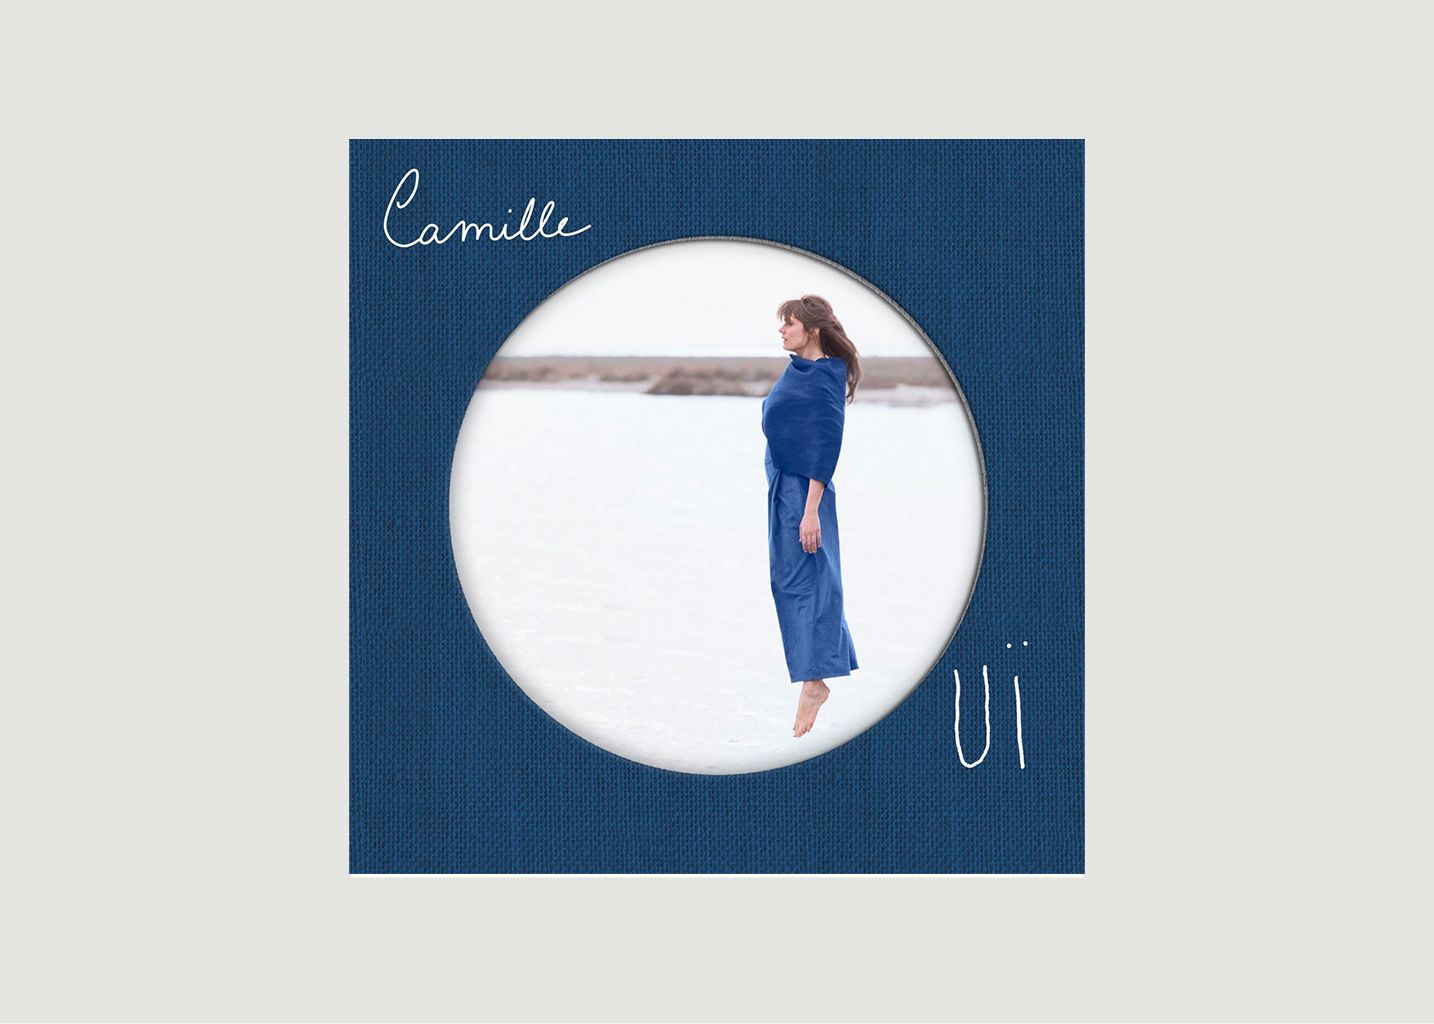 Vinyle Ouï Camille - La vinyl-thèque idéale